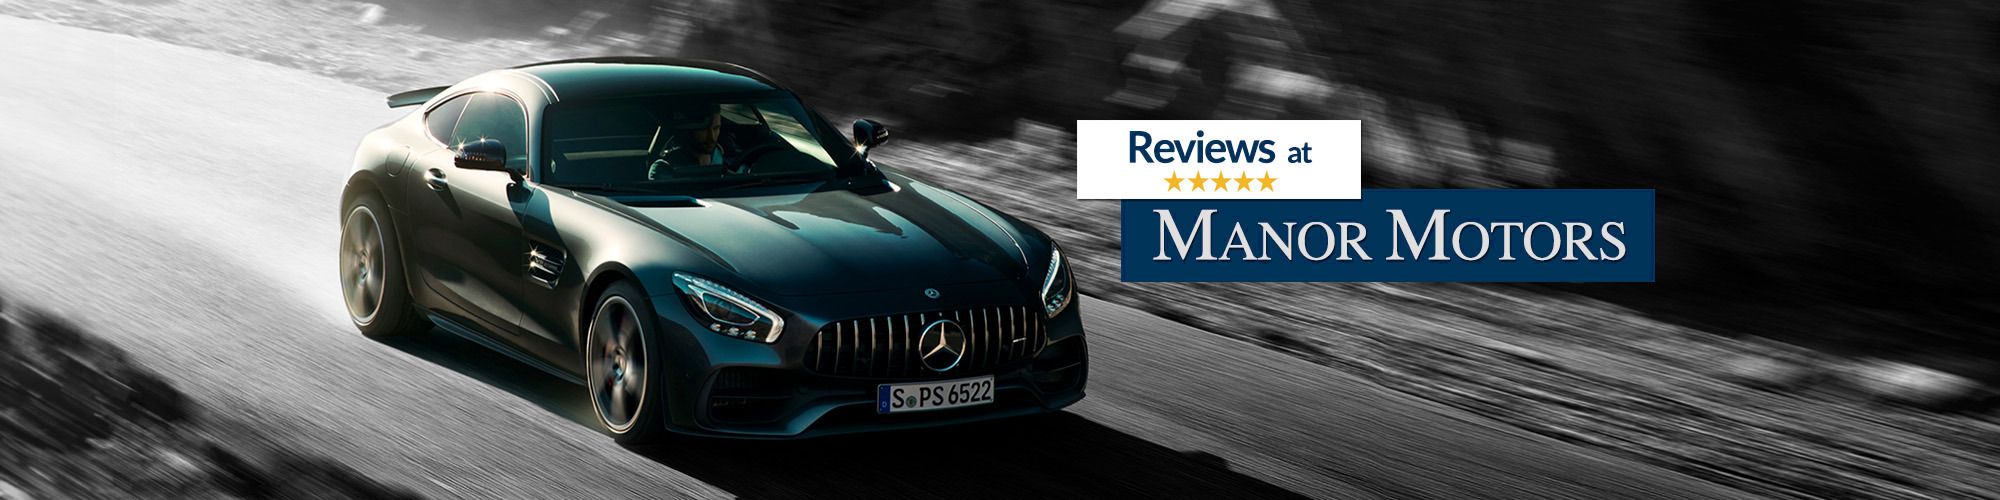 Customer Reviews of Manor Motors